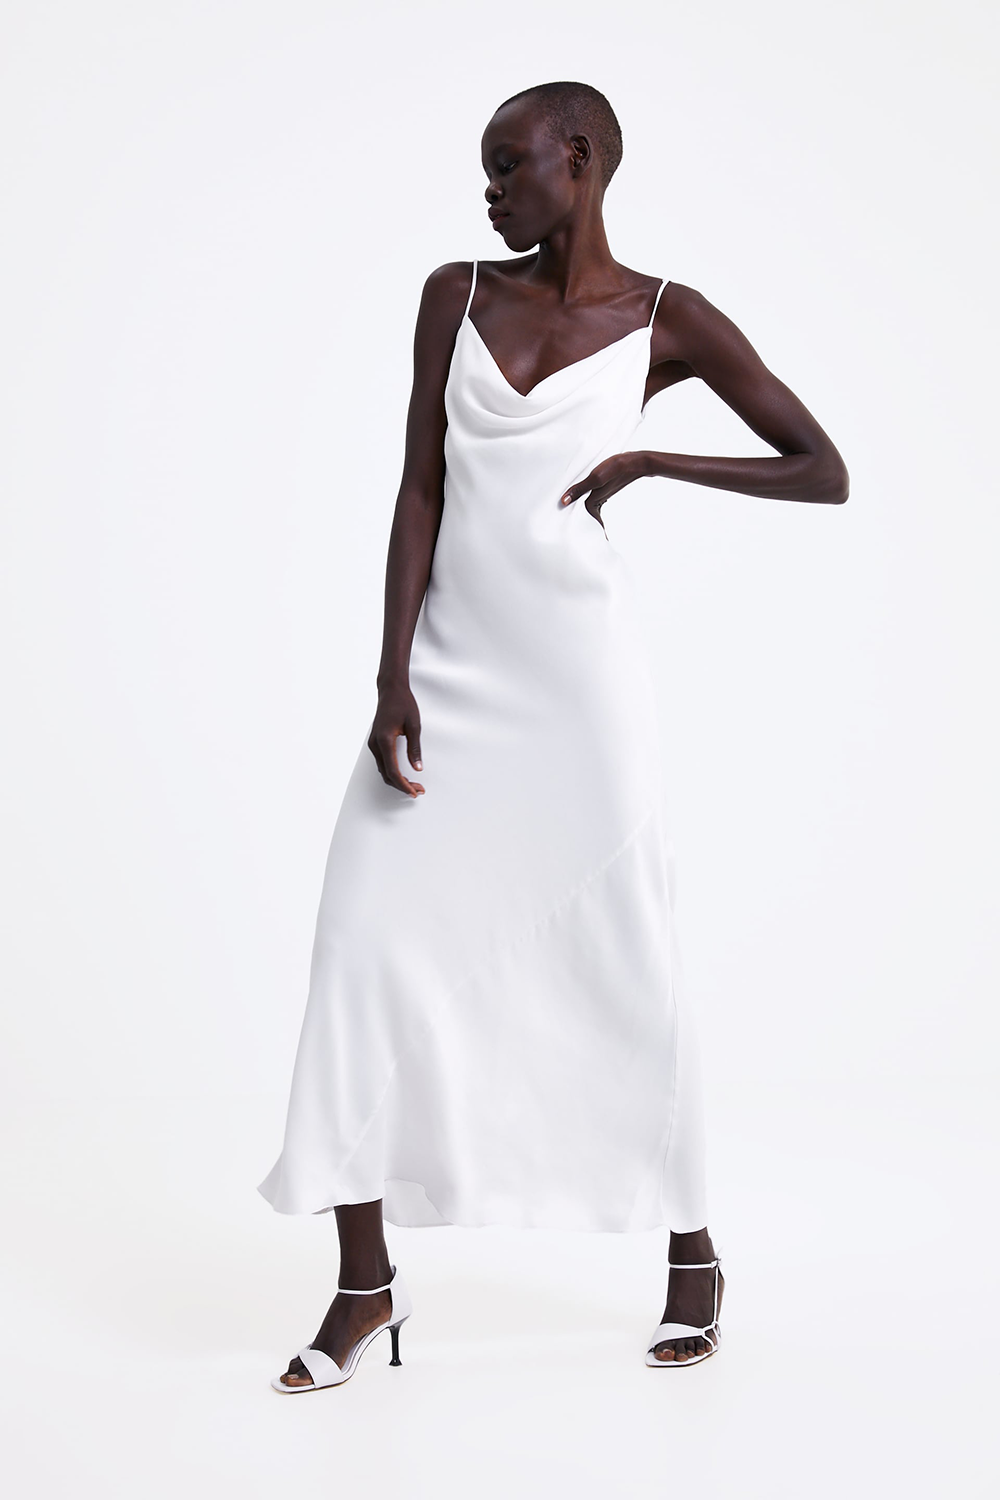 Vestiti Zara 2019: l'abito bianco è tendenza moda Primavera Estate 2019